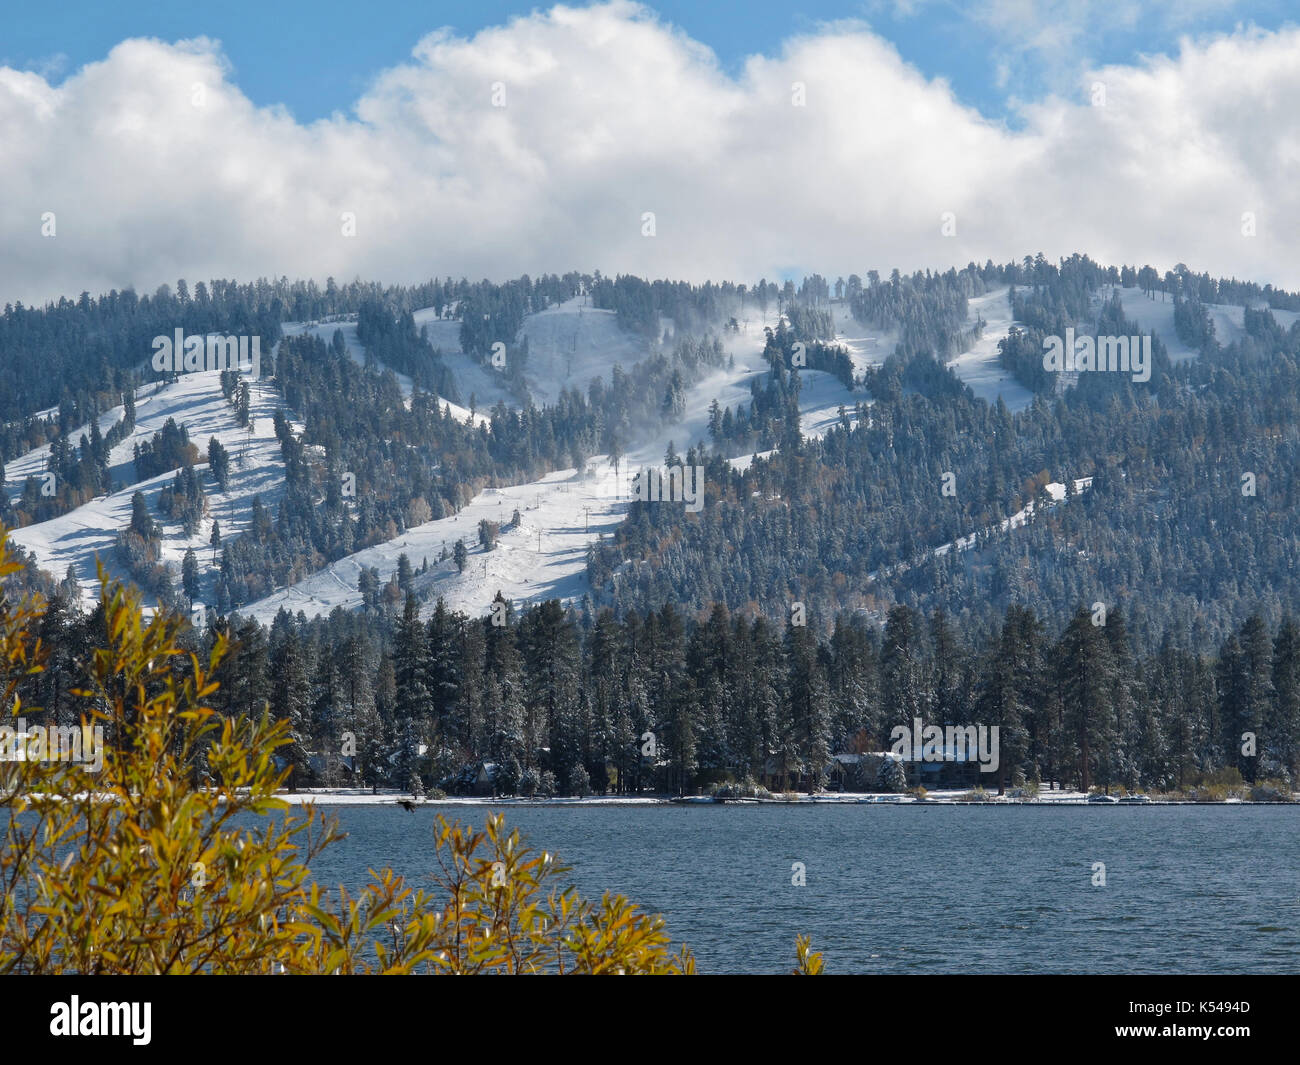 Winter in Big Bear Lake, California Stock Photo: 158061581 - Alamy